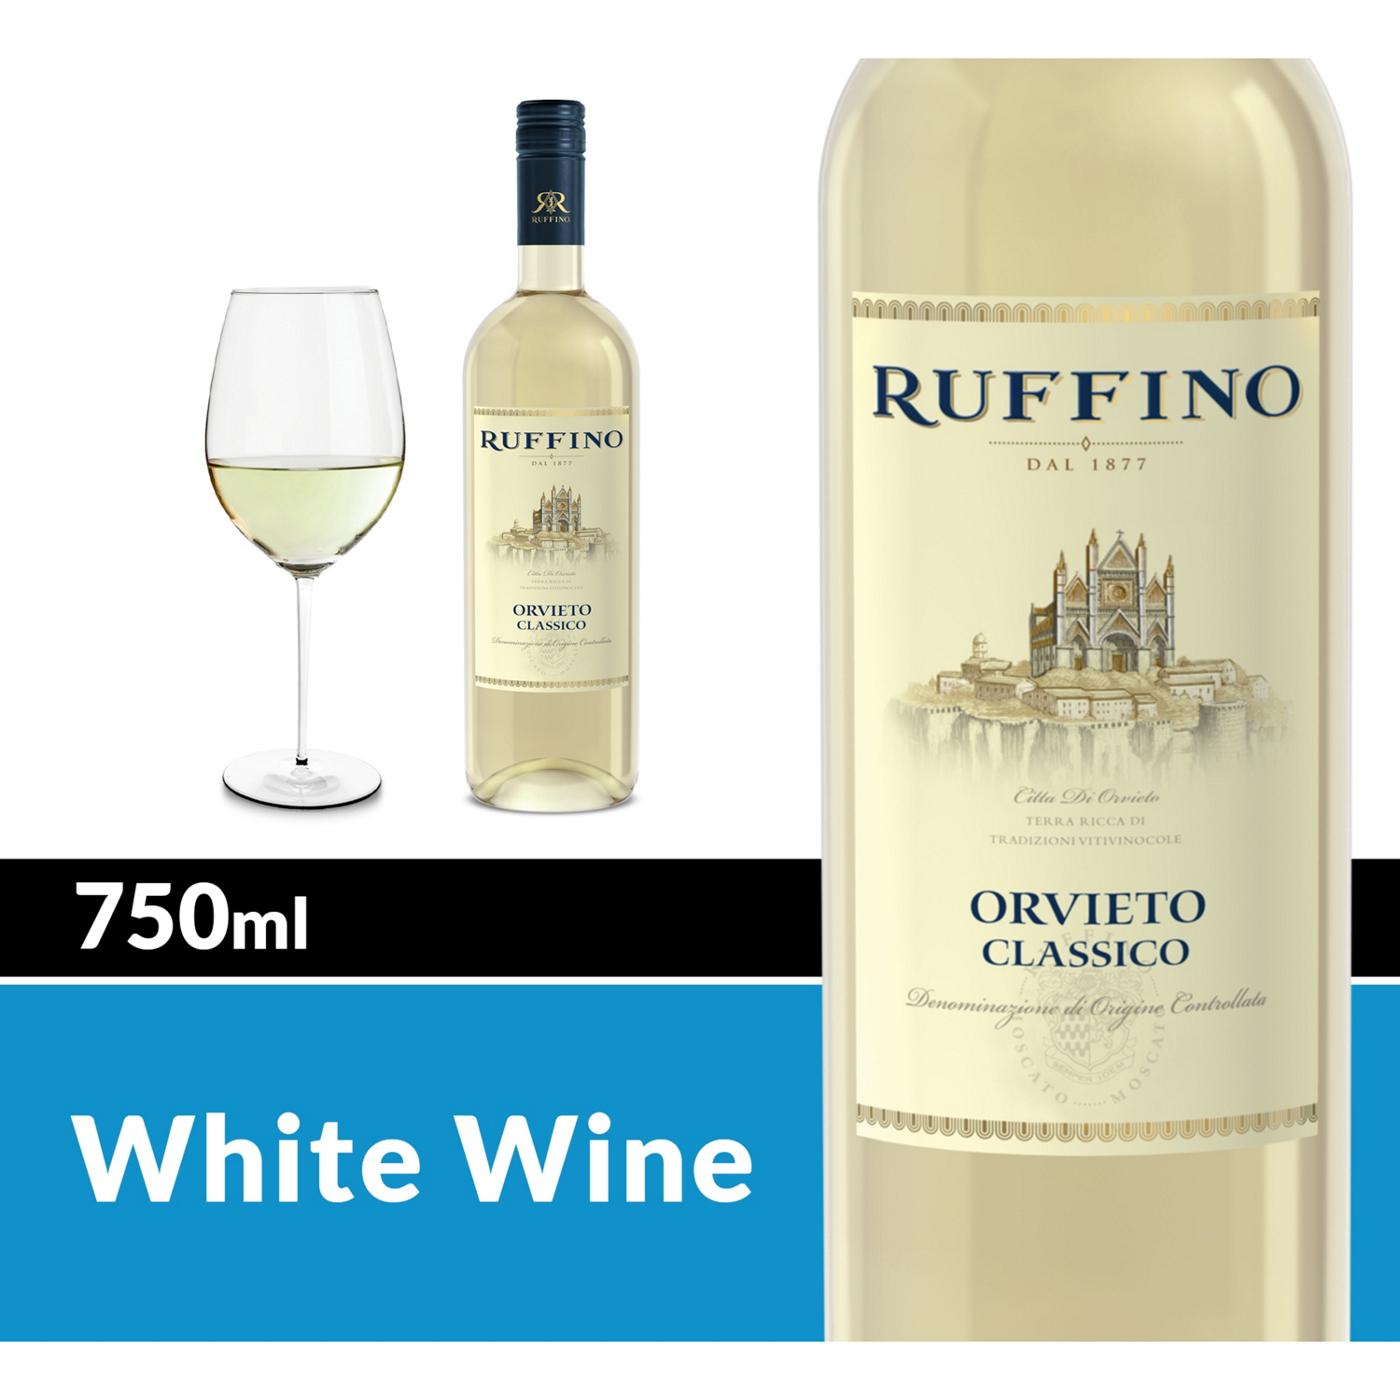 Ruffino Orvieto Classico DOC Grechetto/Procanico/Trebbiano, Italian White Wine 750 mL Bottle; image 5 of 5